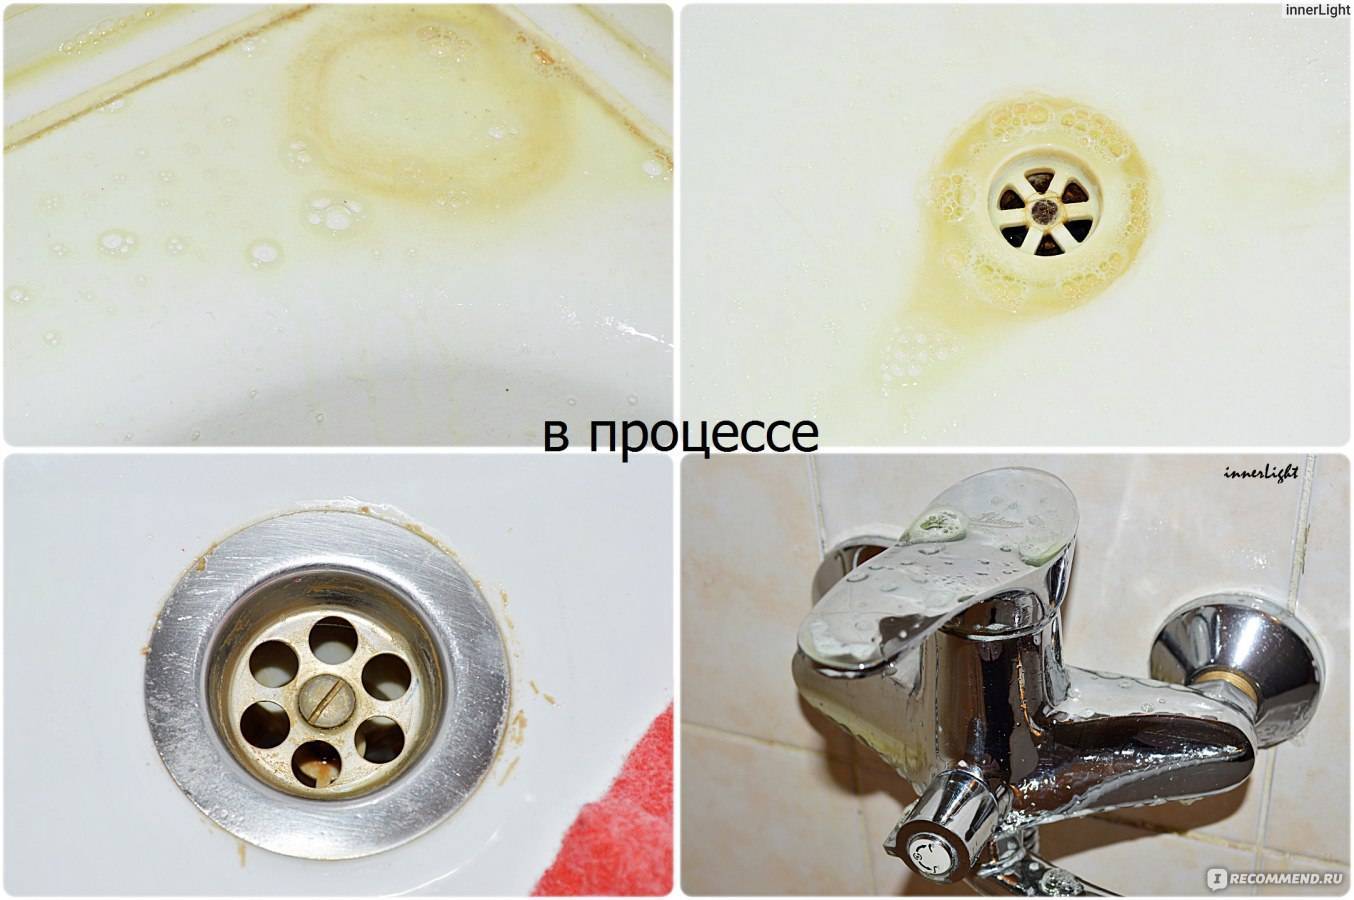 Как удалить известковый налет в ванной: как избавиться и чем очистить, лучшие средства для удаления налета на кране